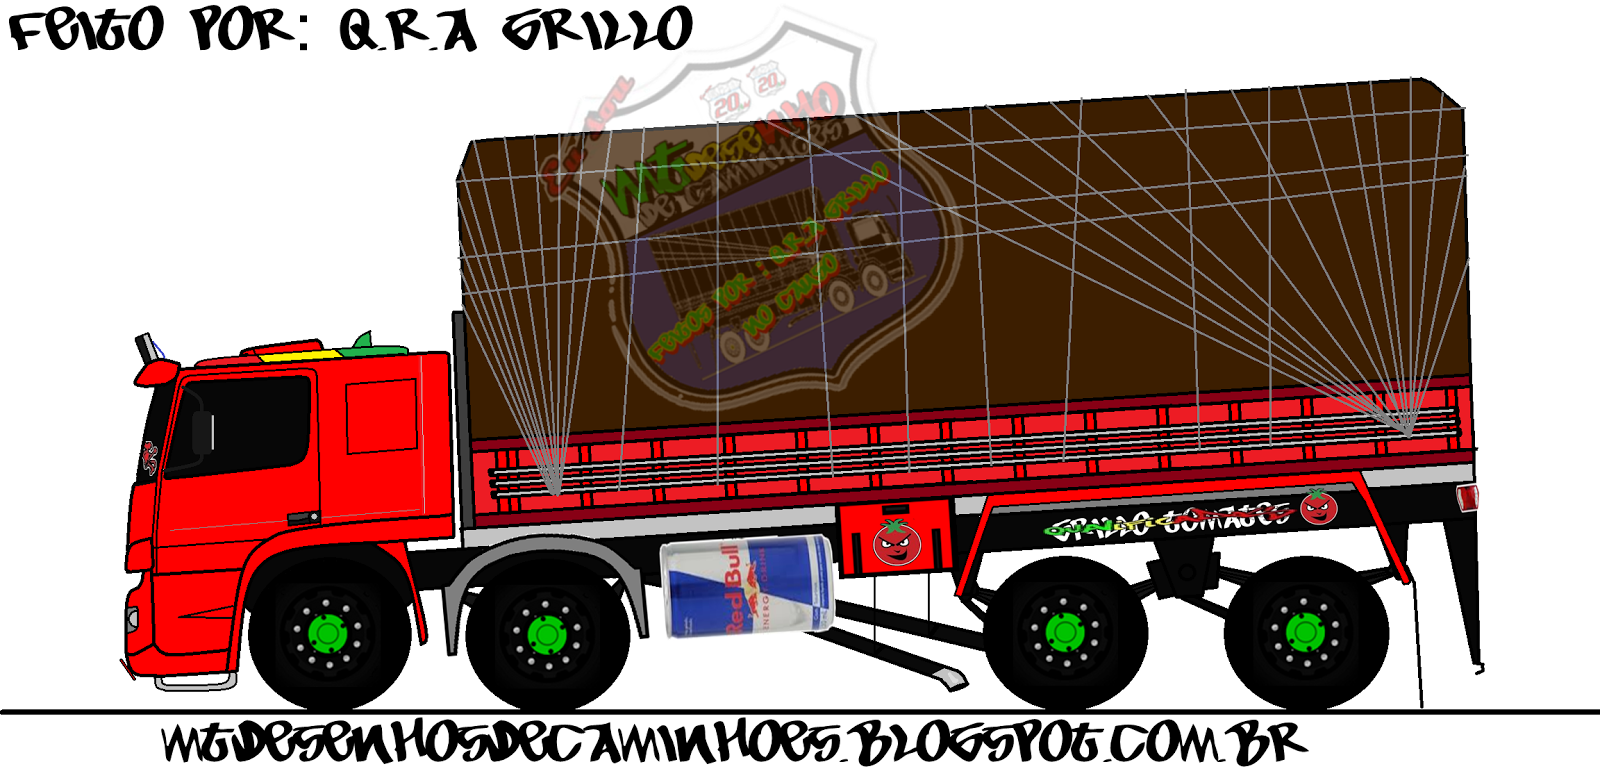 Como desenhar um caminhão verdureiro - Artego 2428 Mercedes - Benz